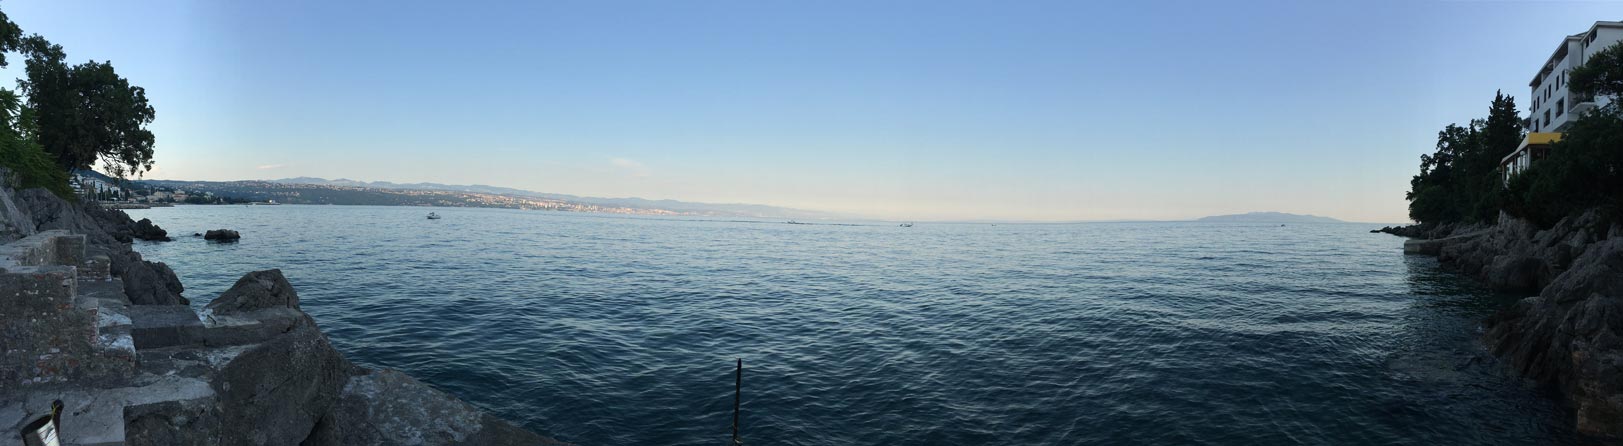 Adriatic Sea - Opatija